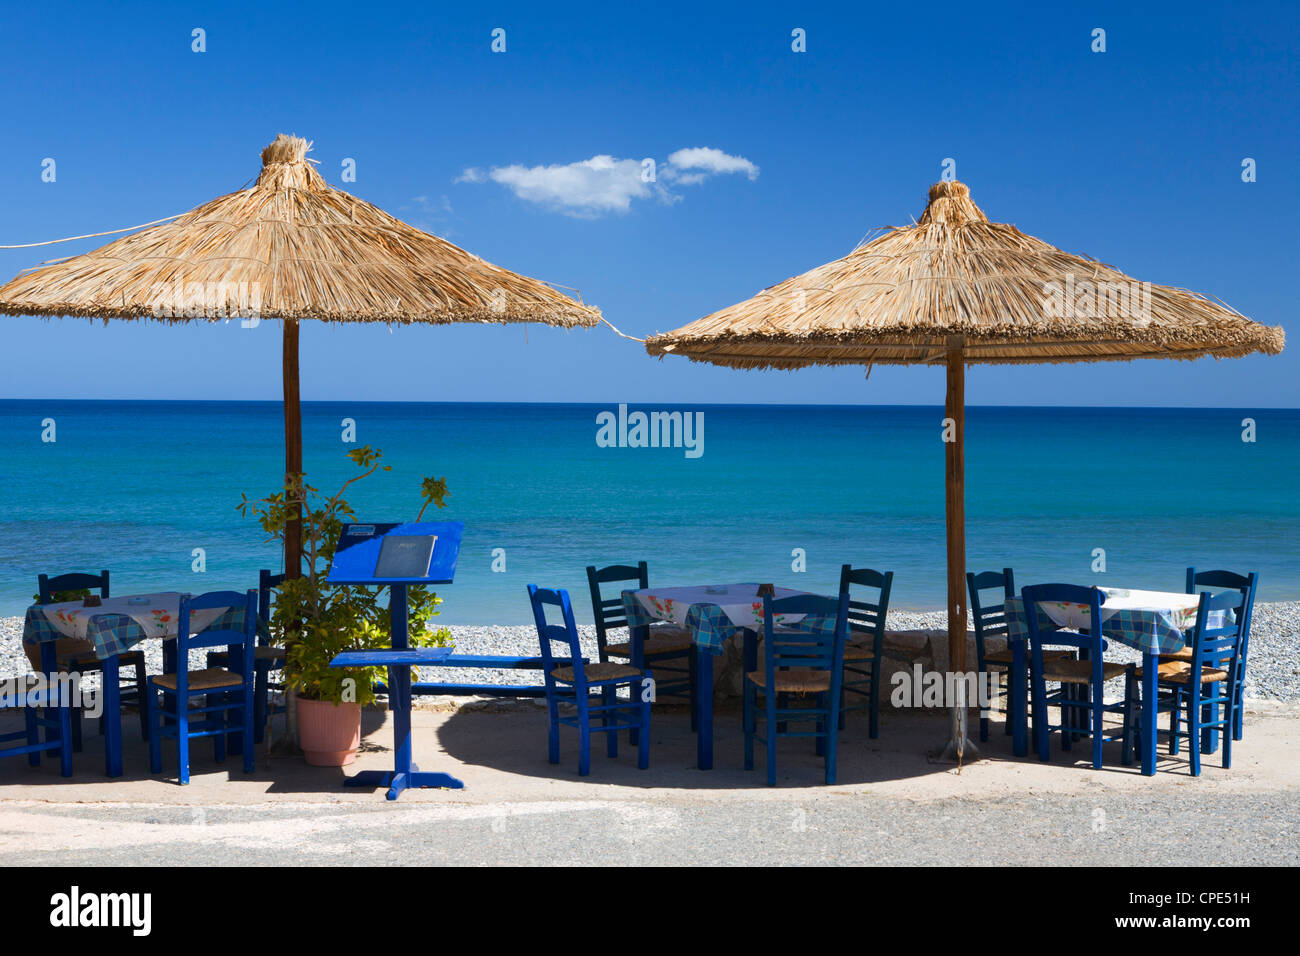 Beach cafe, Kato Zakros, λασίθι, Crète, îles grecques, Grèce, Europe Banque D'Images